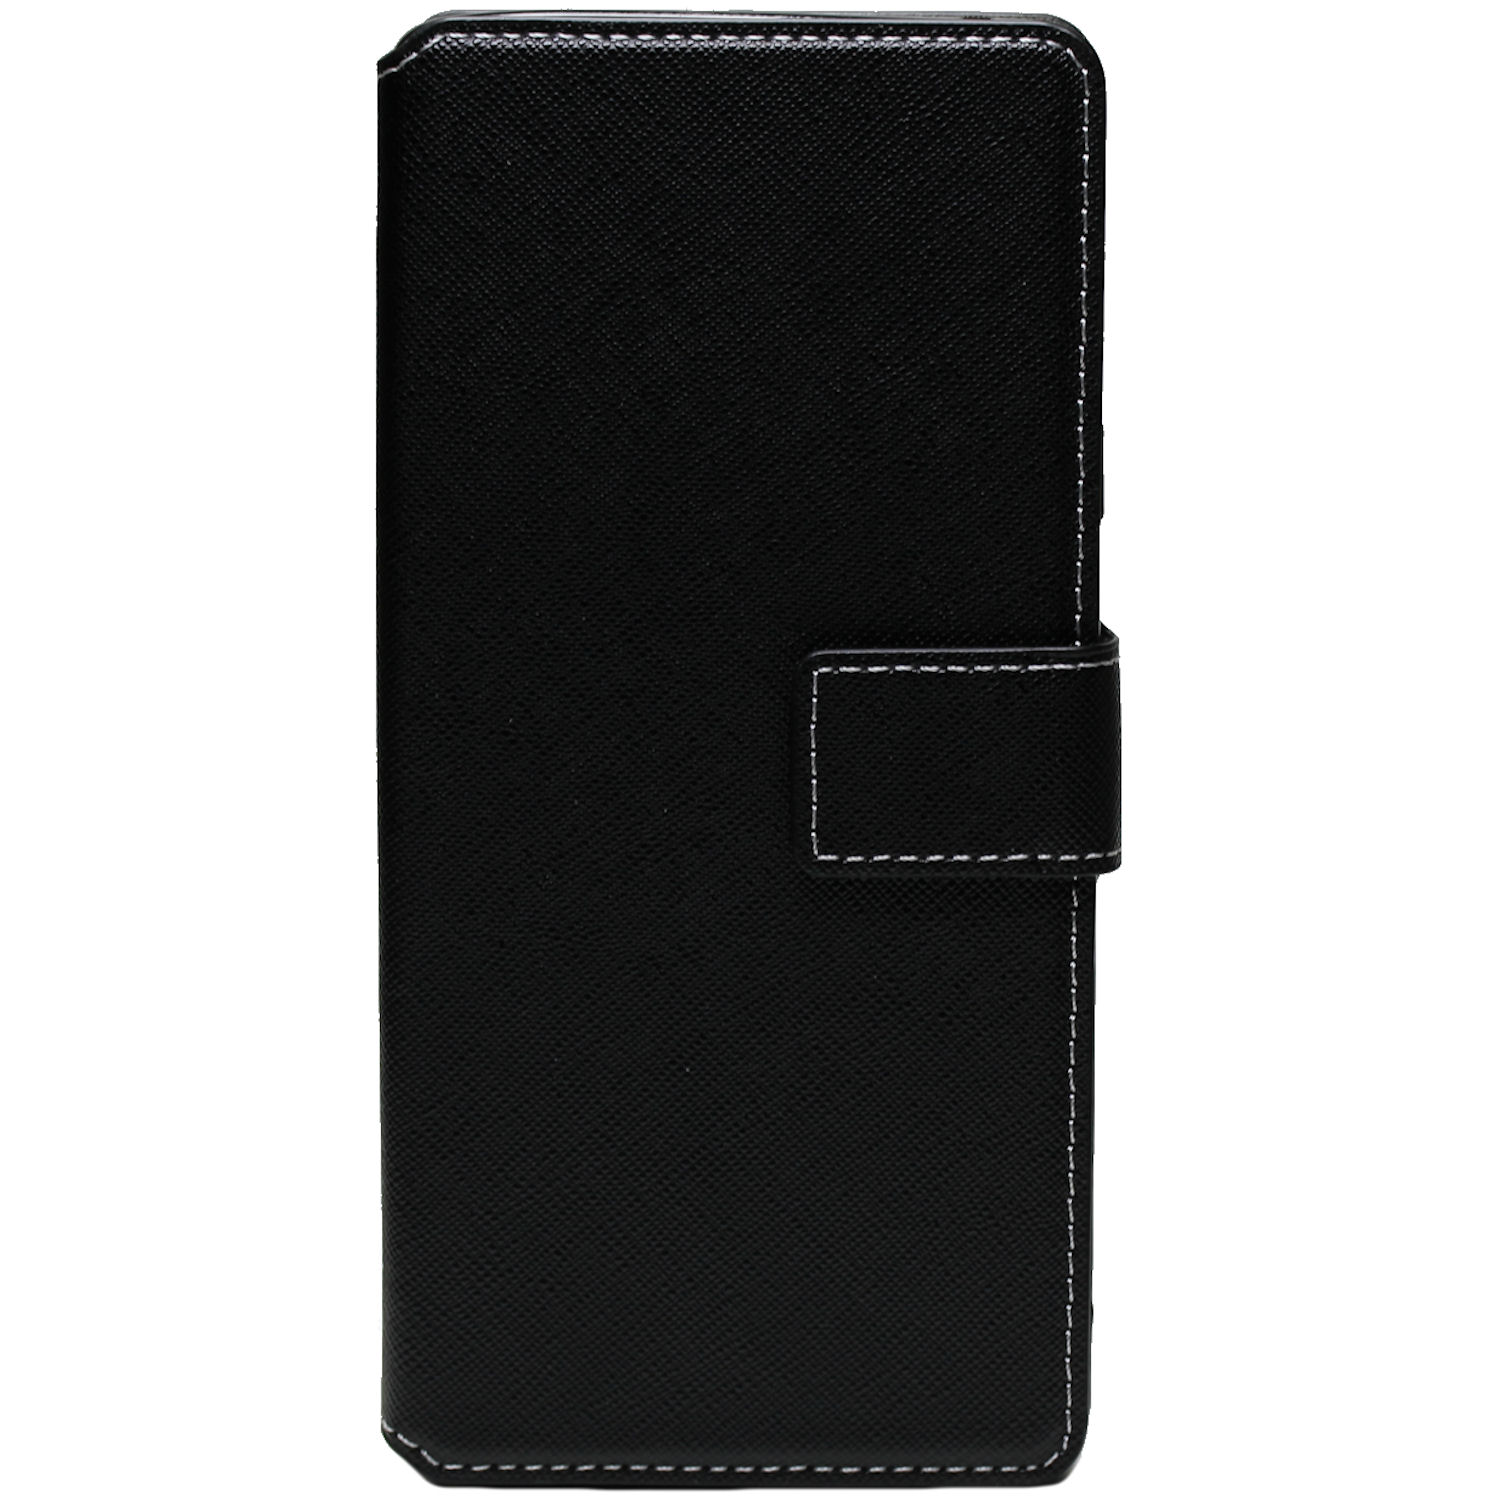 Bookstyle Tasche für Samsung Galaxy Note 9 N960F schwarz